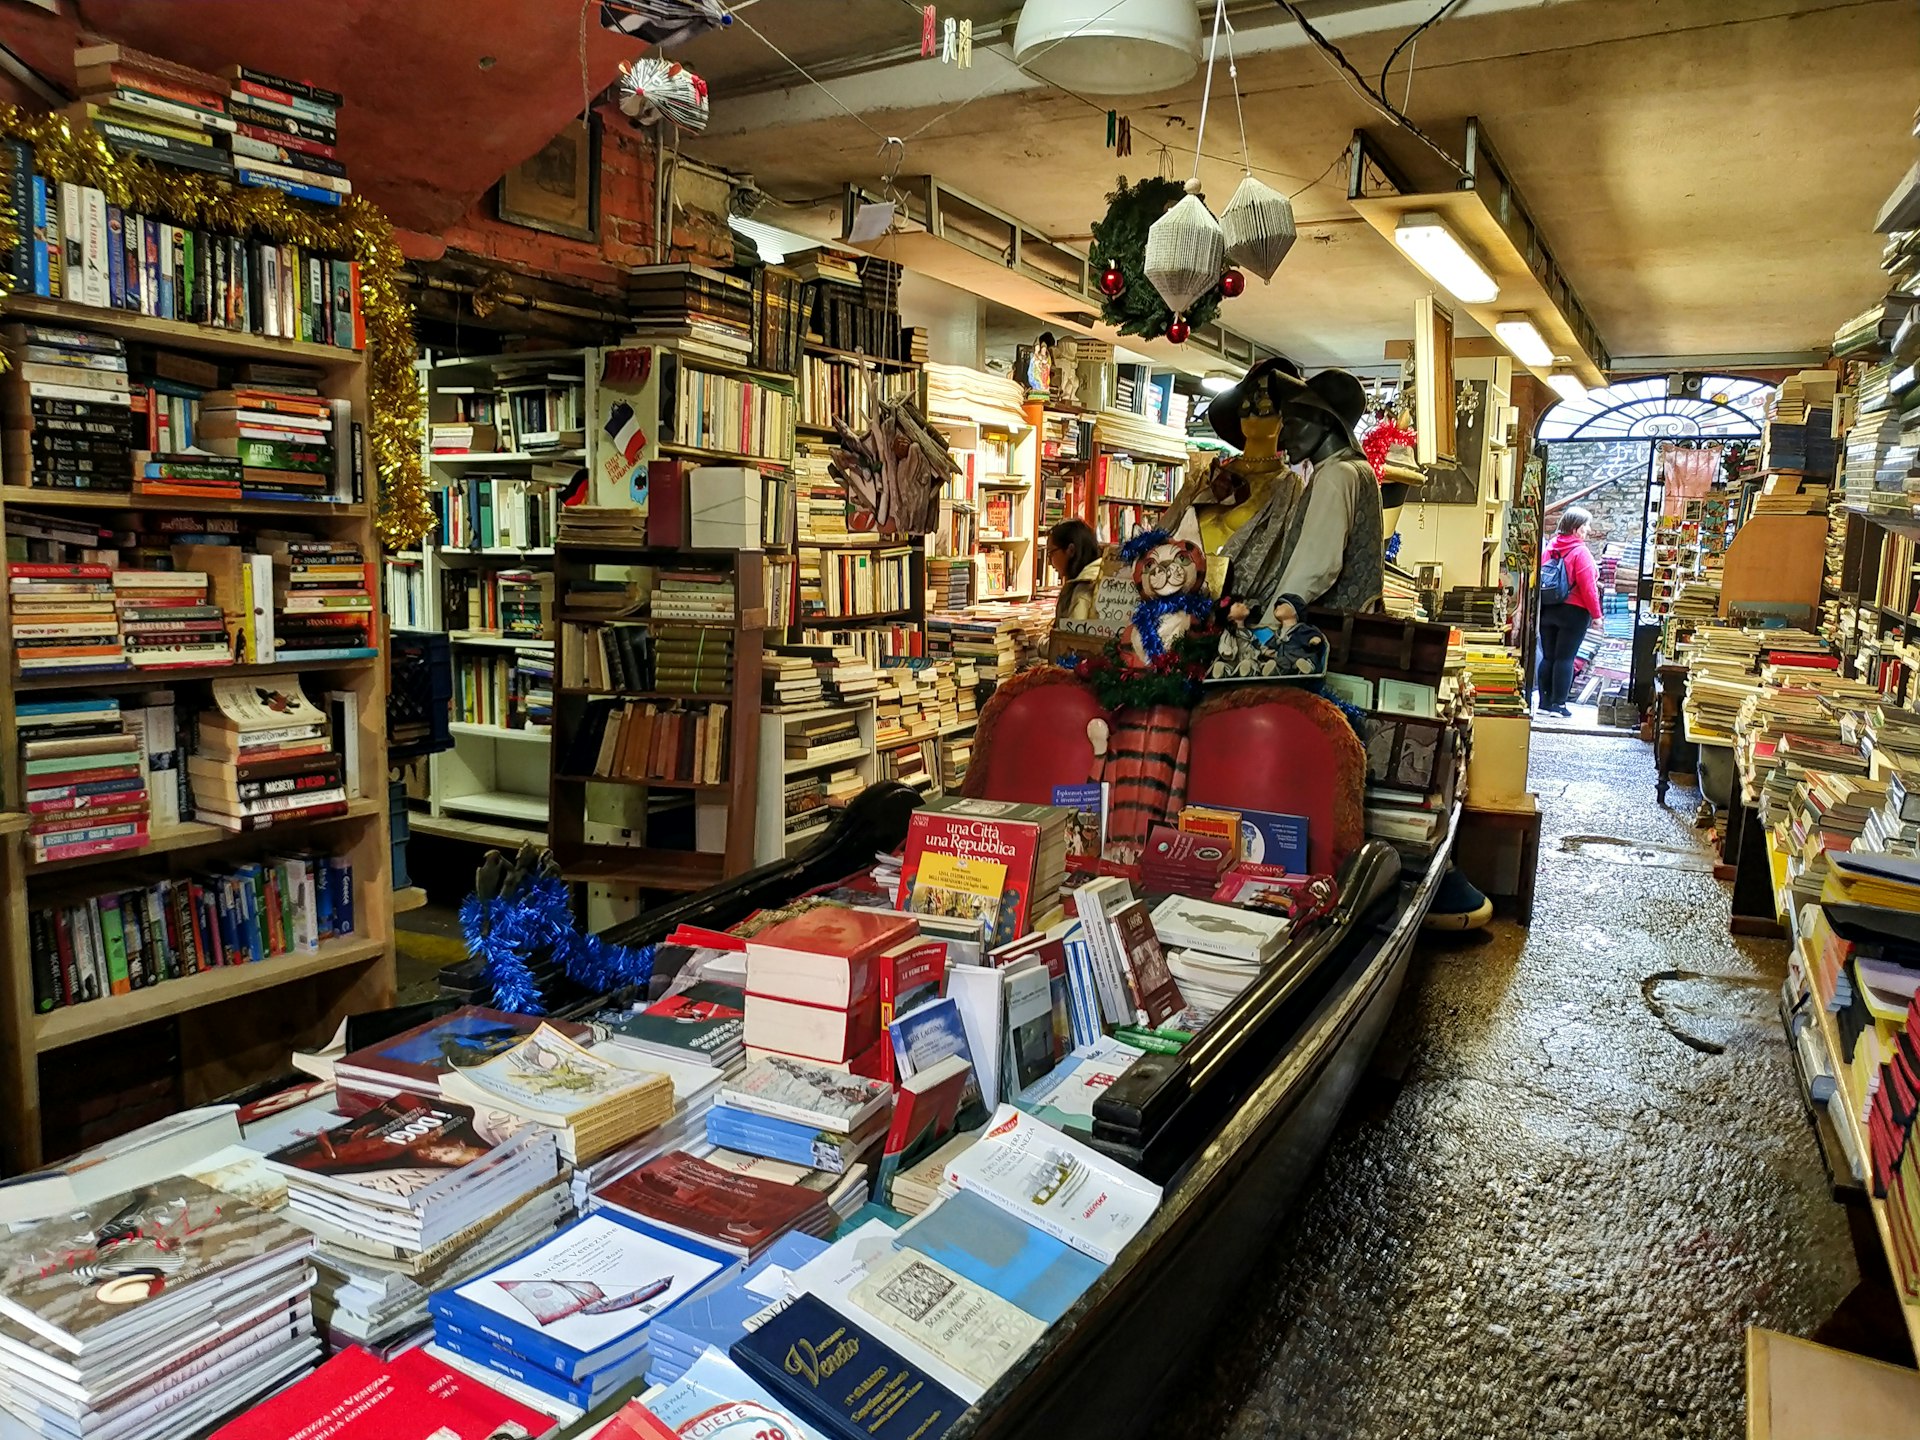 Books stacked in a gondola, in bookshop Acqua Alta. Venice, Italy